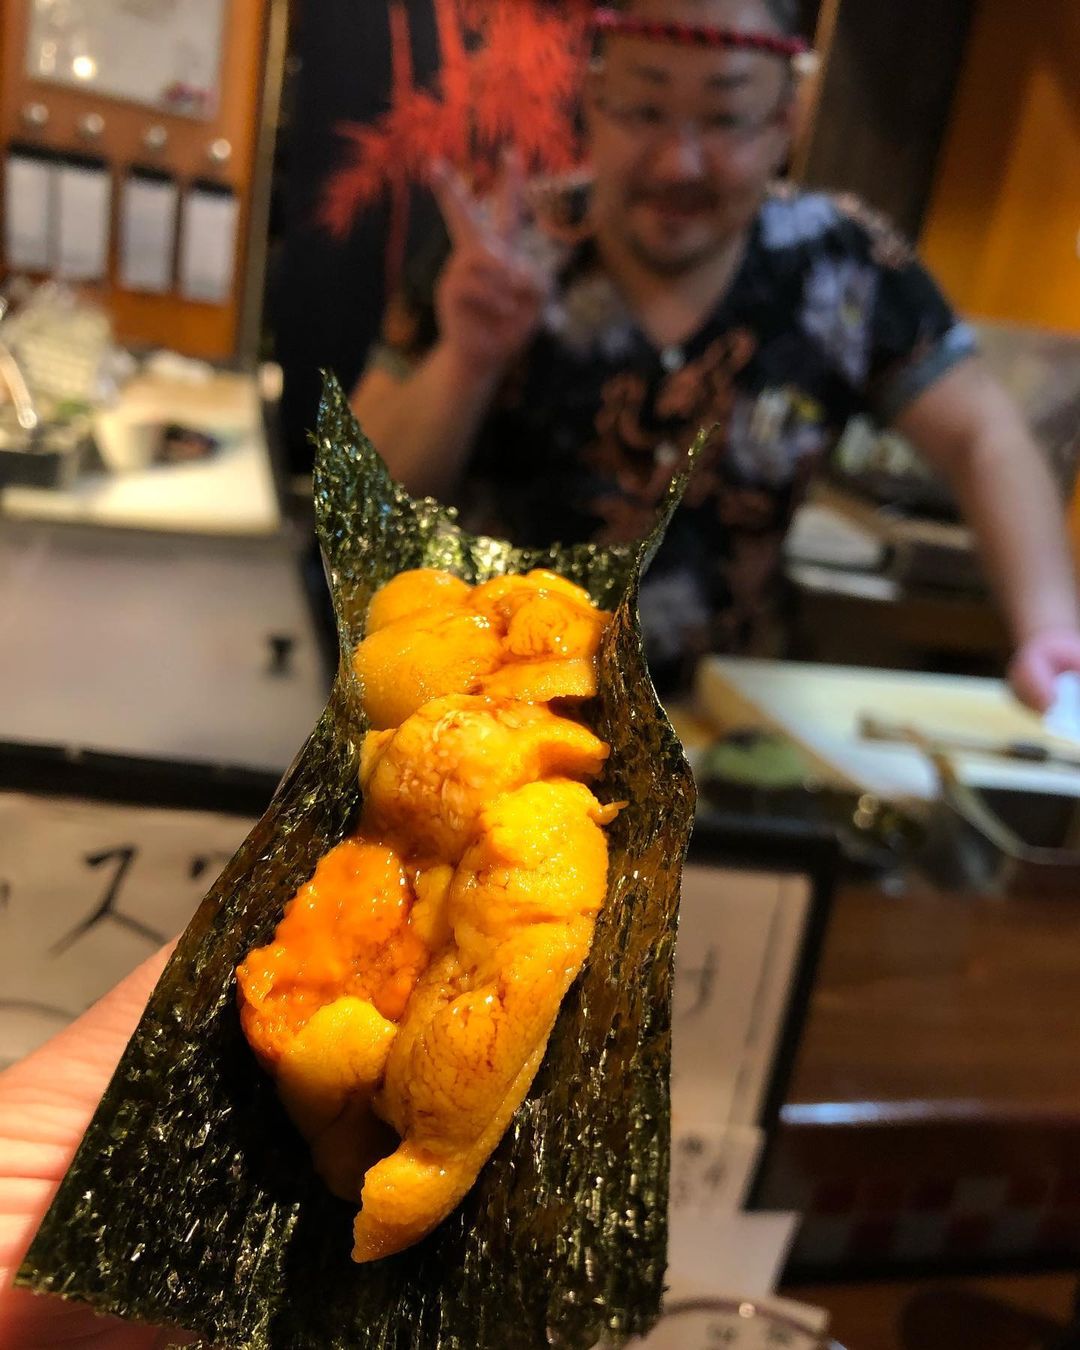 cheap sushi osaka - urchin sushi